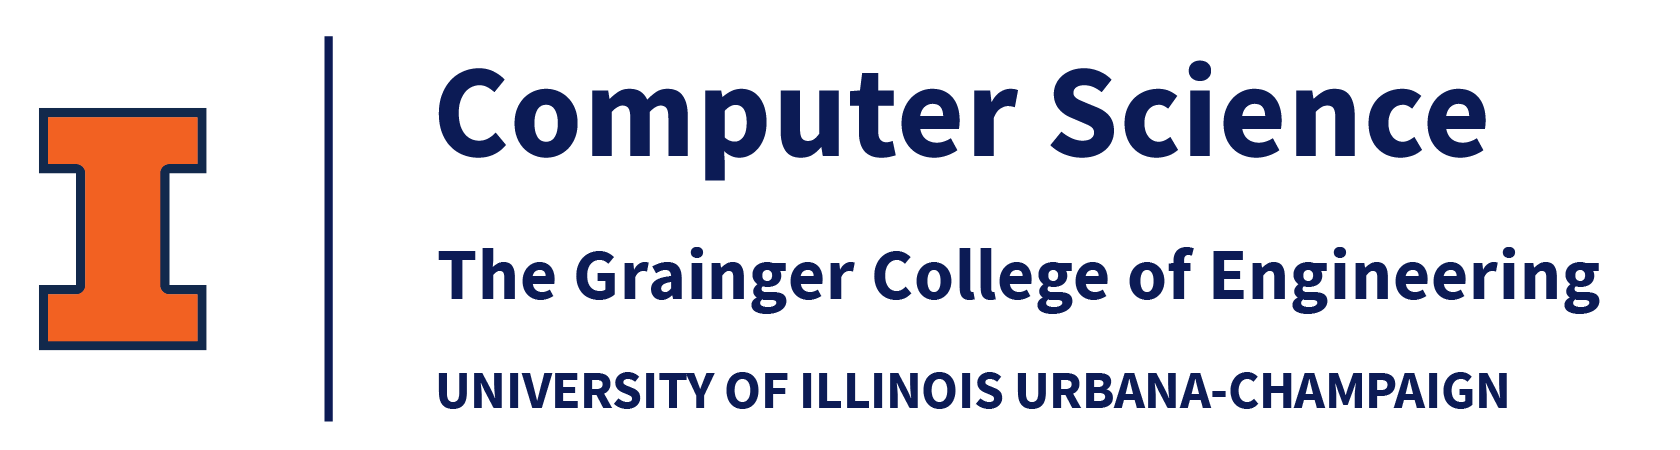 University of Illinois_CS